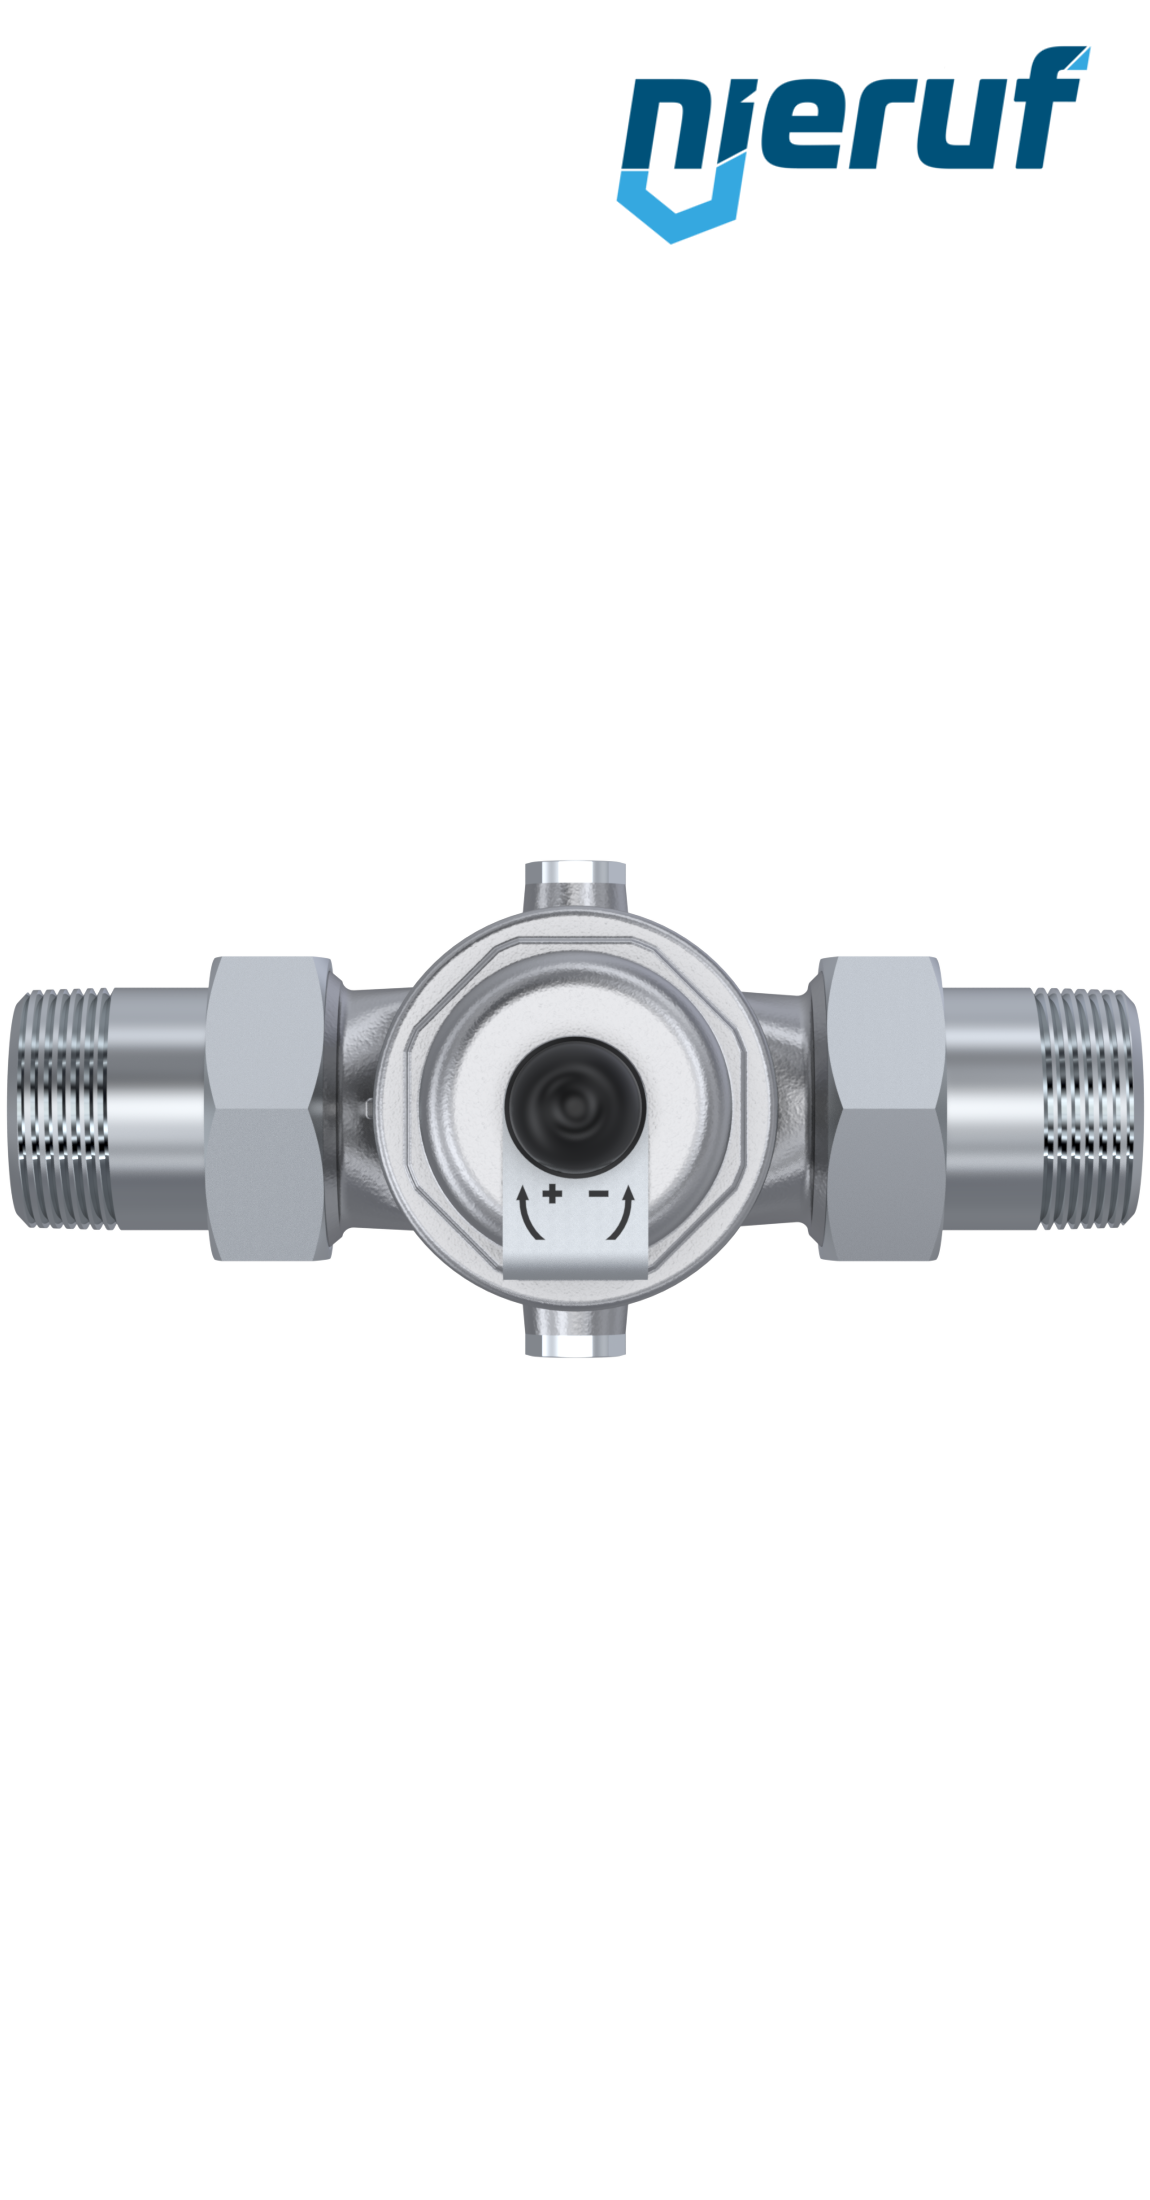 pressure reducing valve 1 1/4" inch male thread DM04 stainless steel FKM 5.0 - 15.0 bar